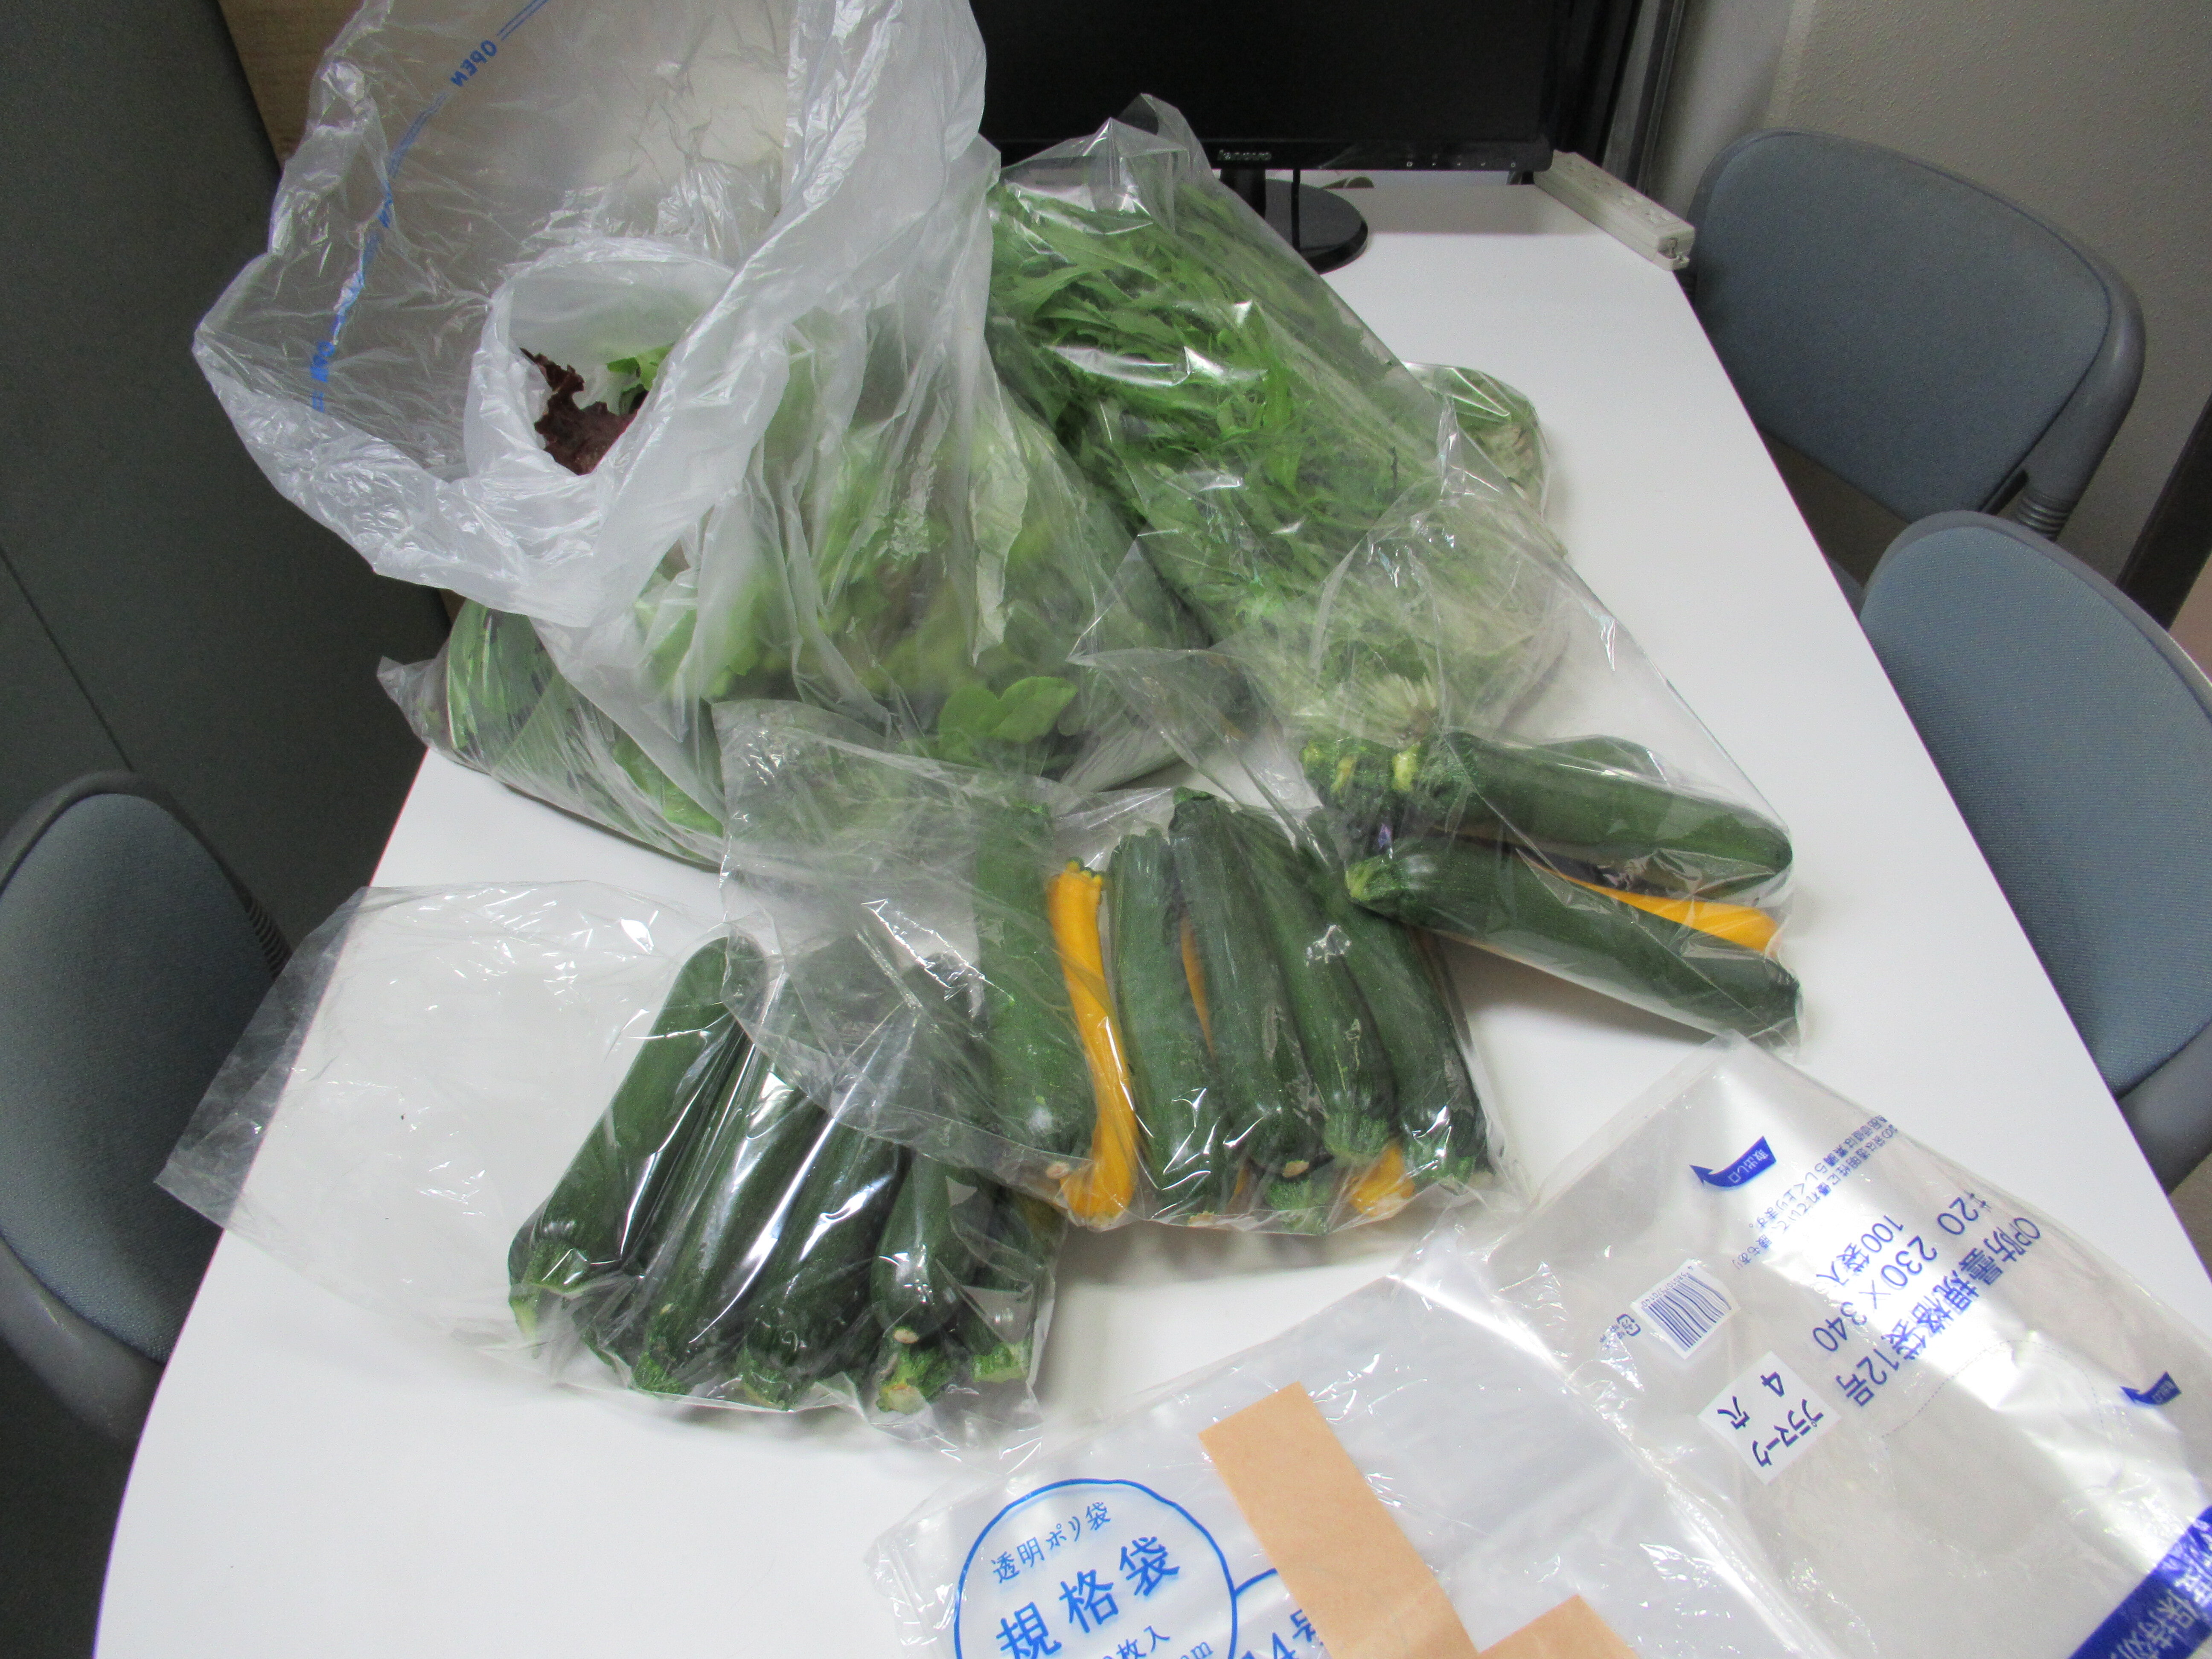 高橋さんのご厚意により、会津大学留学生に新鮮な野菜が届けられました。